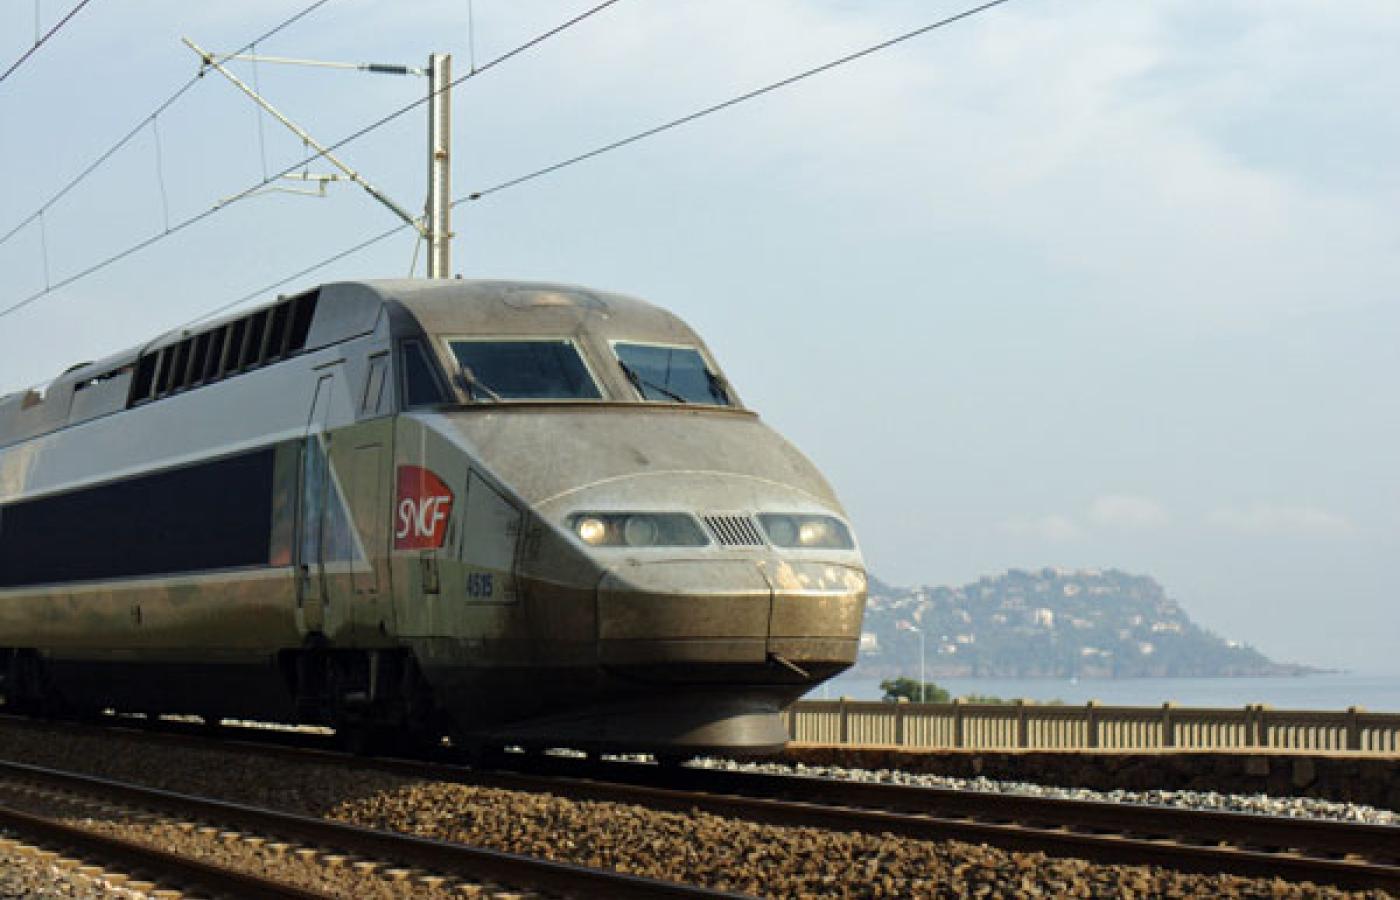 Francja zamierza wyjechać z kryzysu rozbudowując sieć szybkich pociągów TGV. Fot. Michael Budde, Flickr, CC by SA